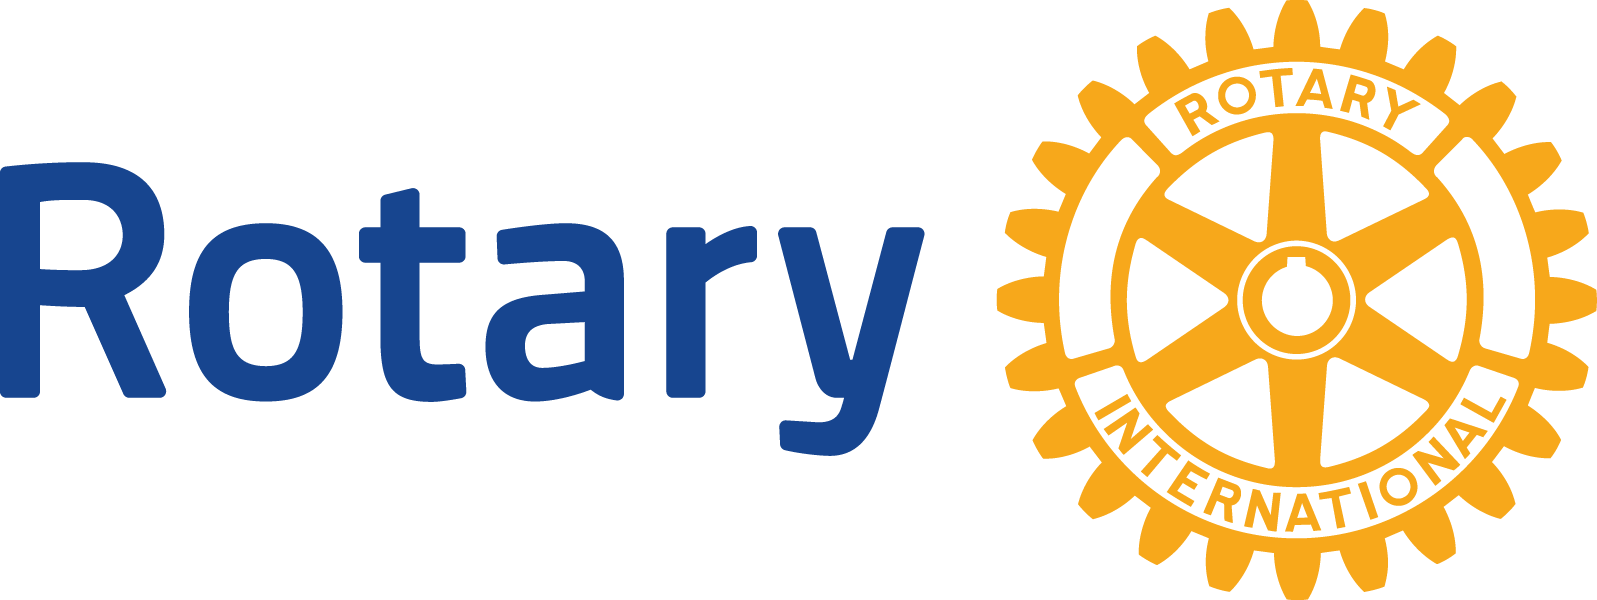 Strathroy Hospital Foundation Logo